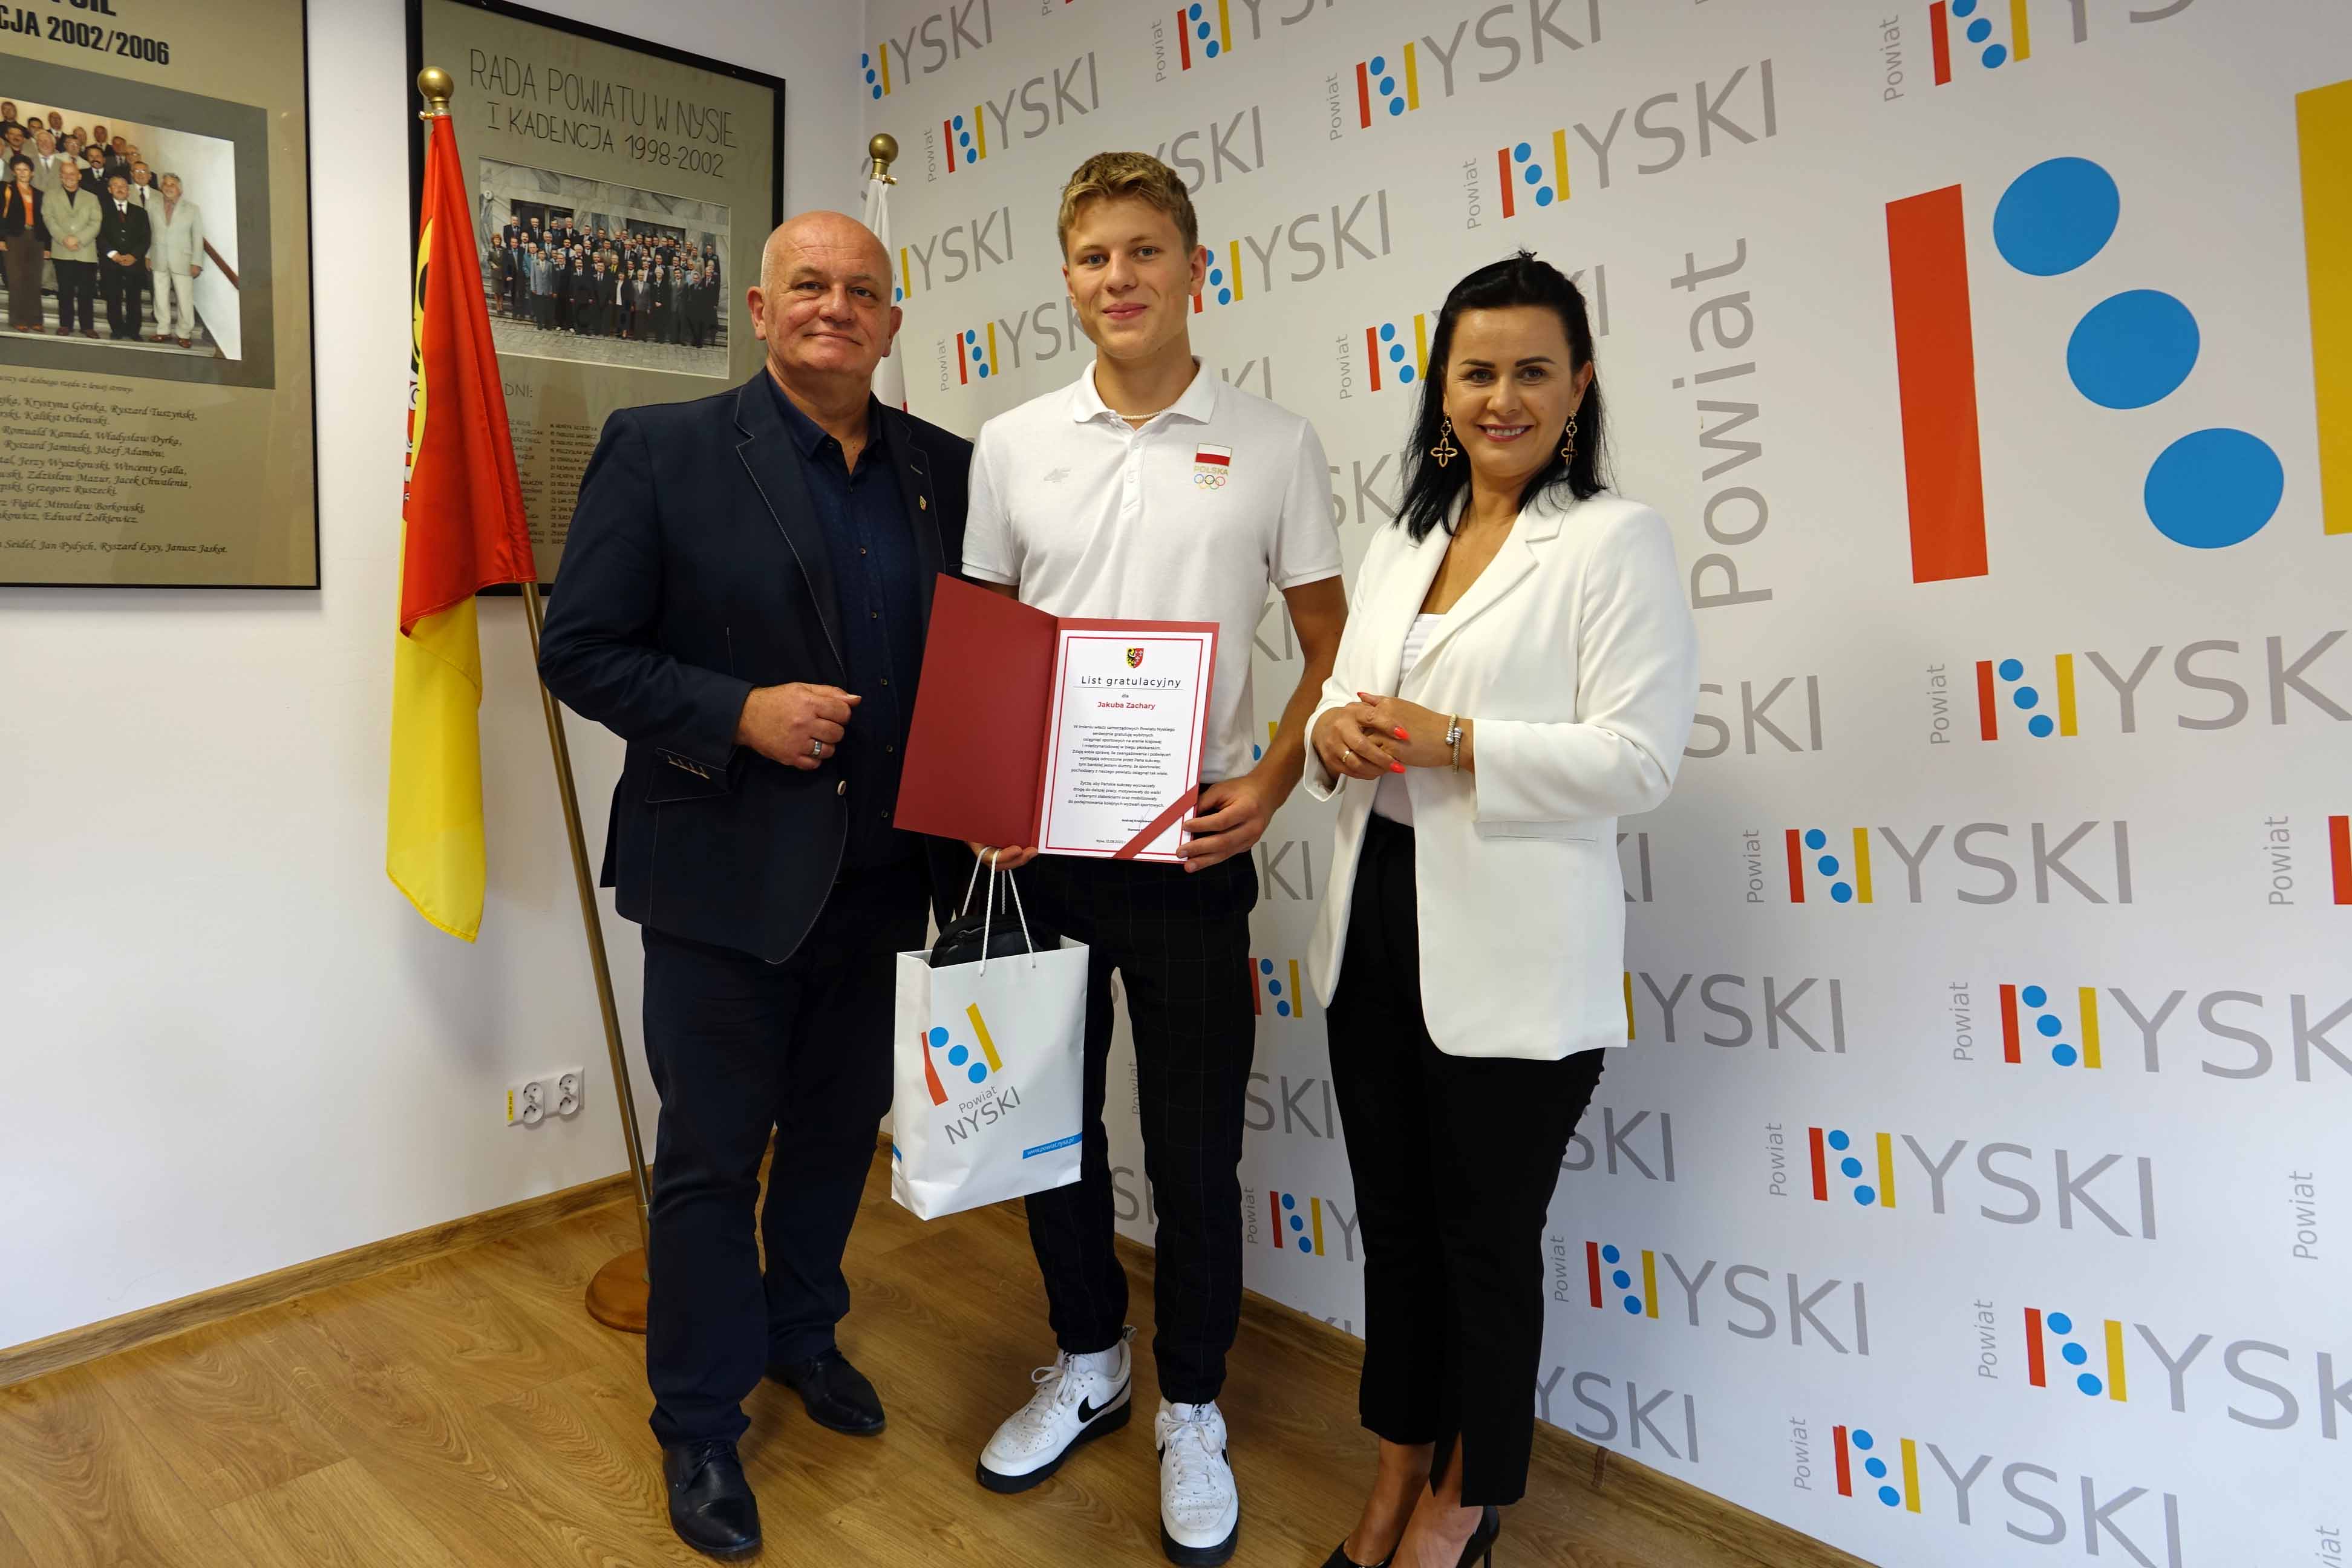 List gratulacyjny oraz nagrodę młodemu sportowcowi wręczyli Andrzej Kruczkiewicz Starosta Nyski oraz Joanna Burska - członek zarządu powiatu nyskiego życząc dalszych wspaniałych sukcesów.